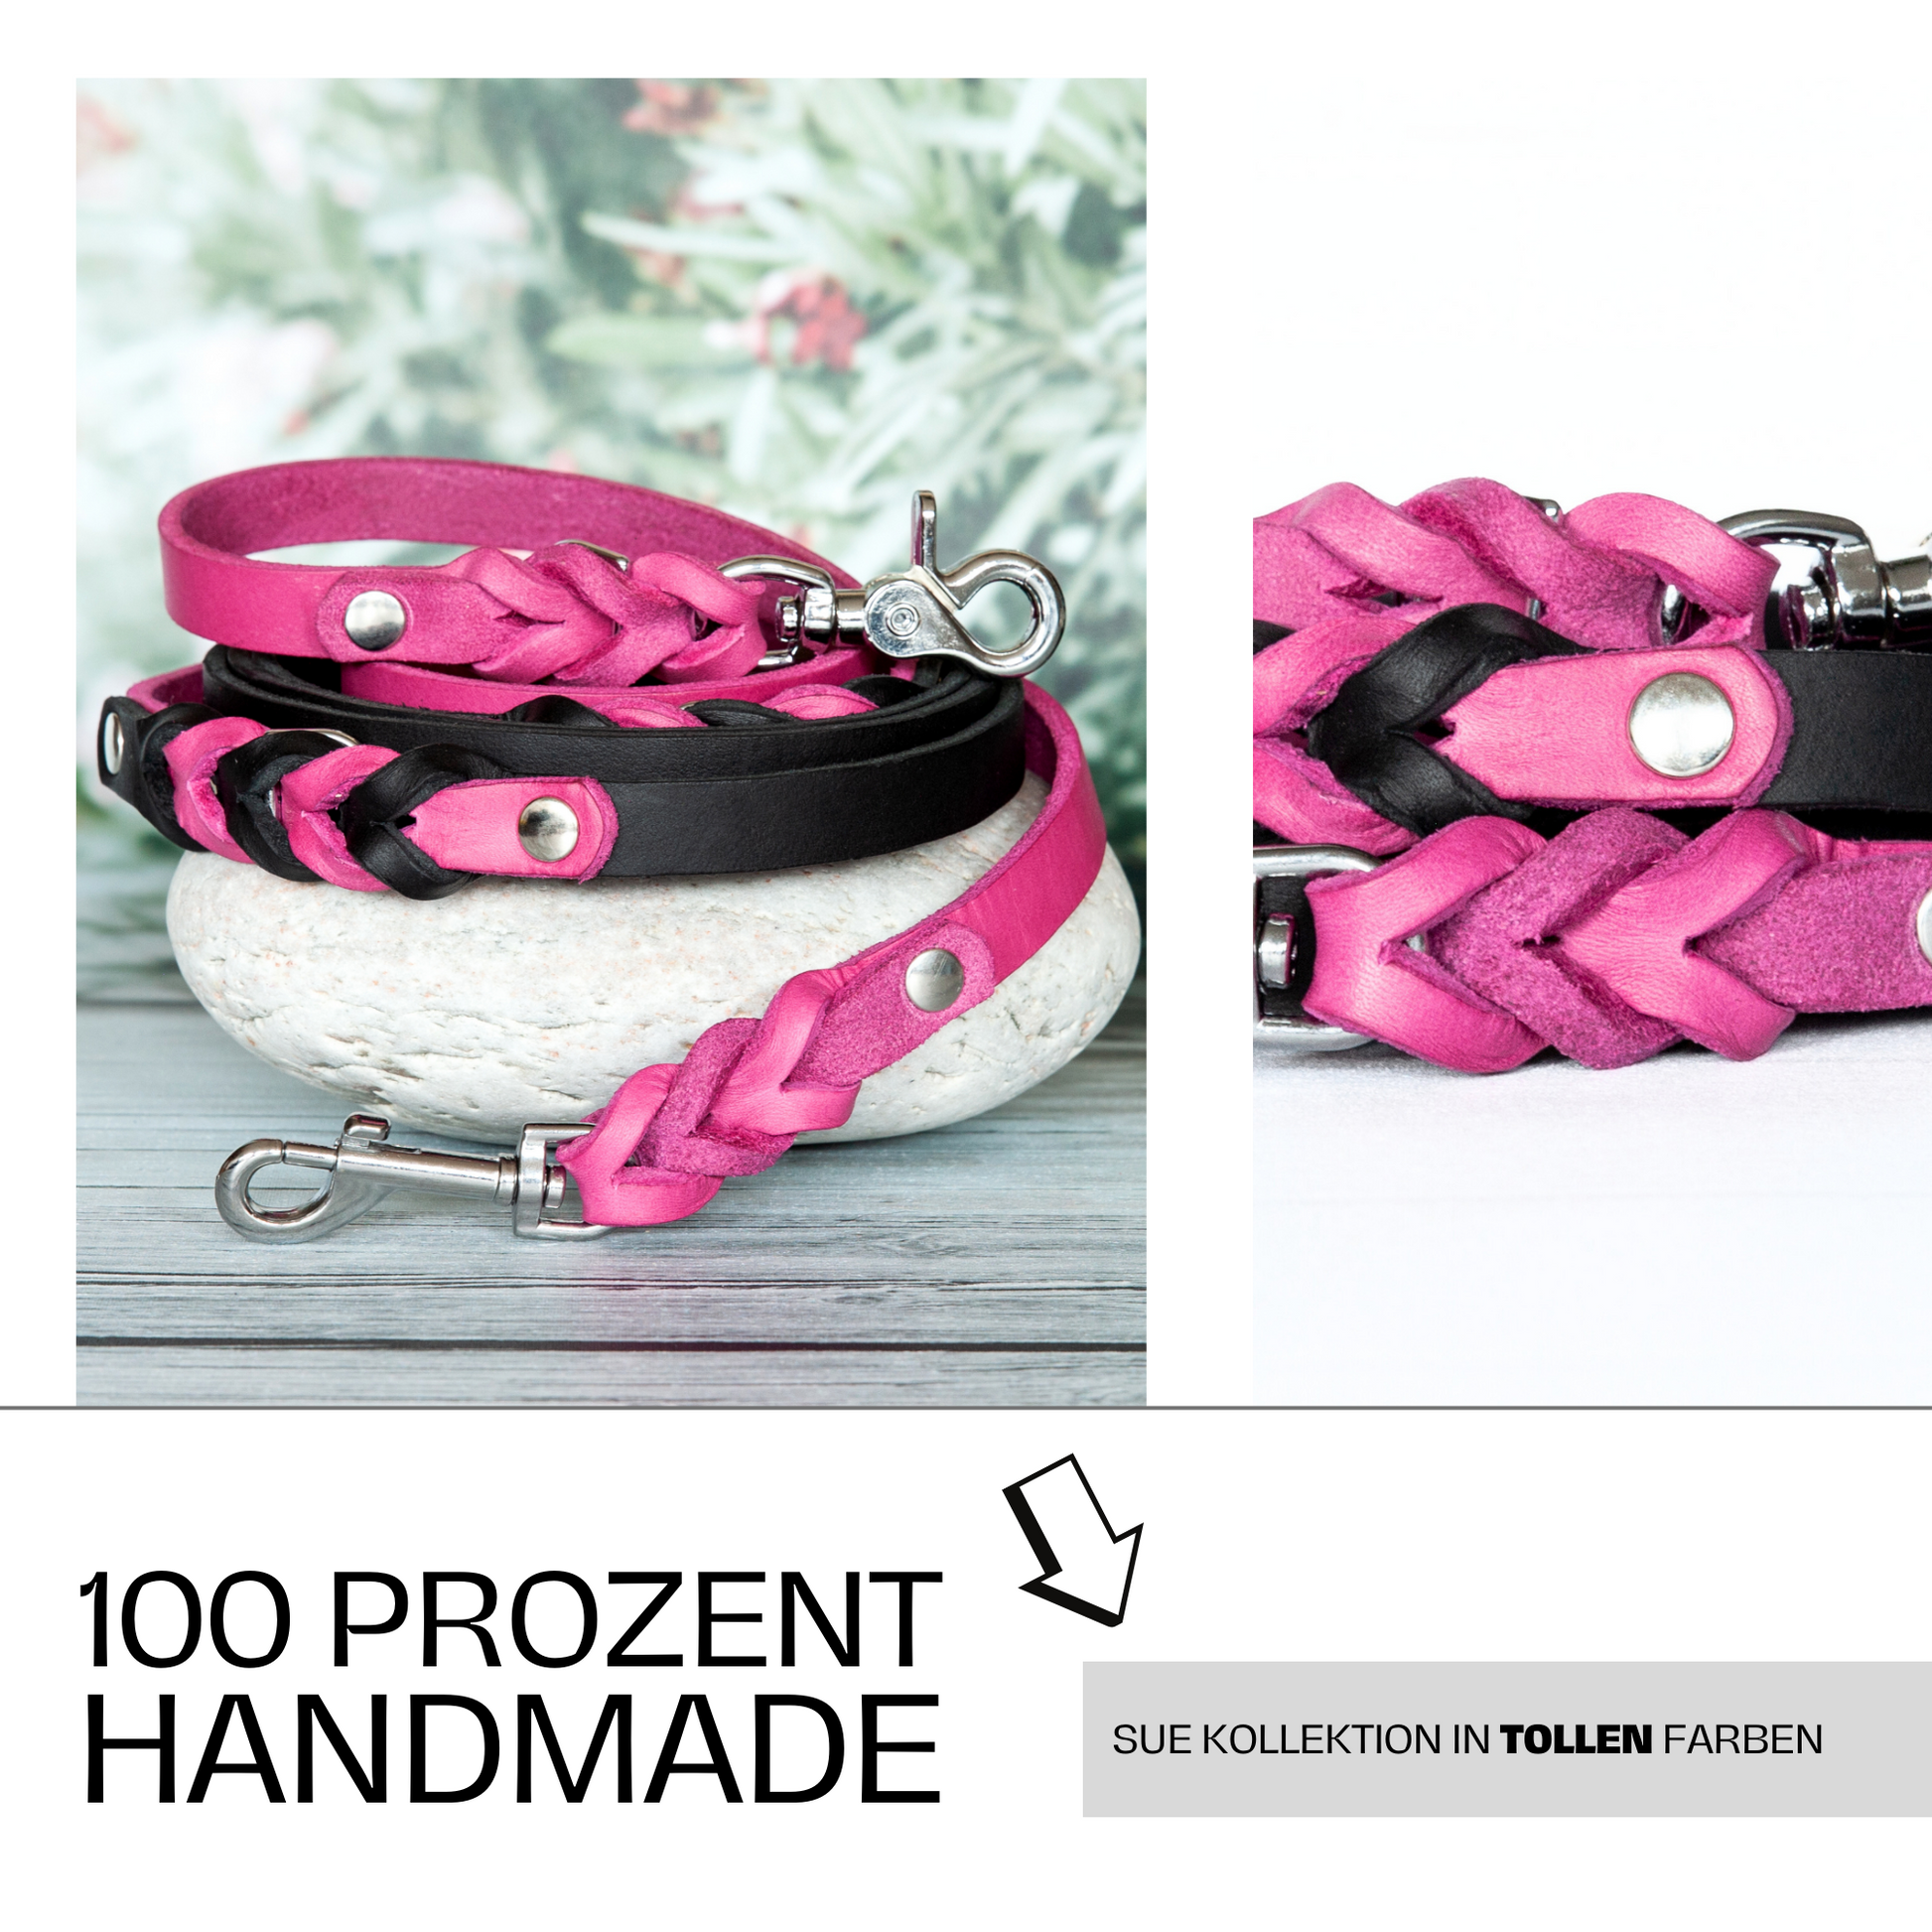 Hundeleine SUE handgefertigt aus Leder. Lederleine in der Farbe Pink und Schwarz. Hundelederleine. Details 3